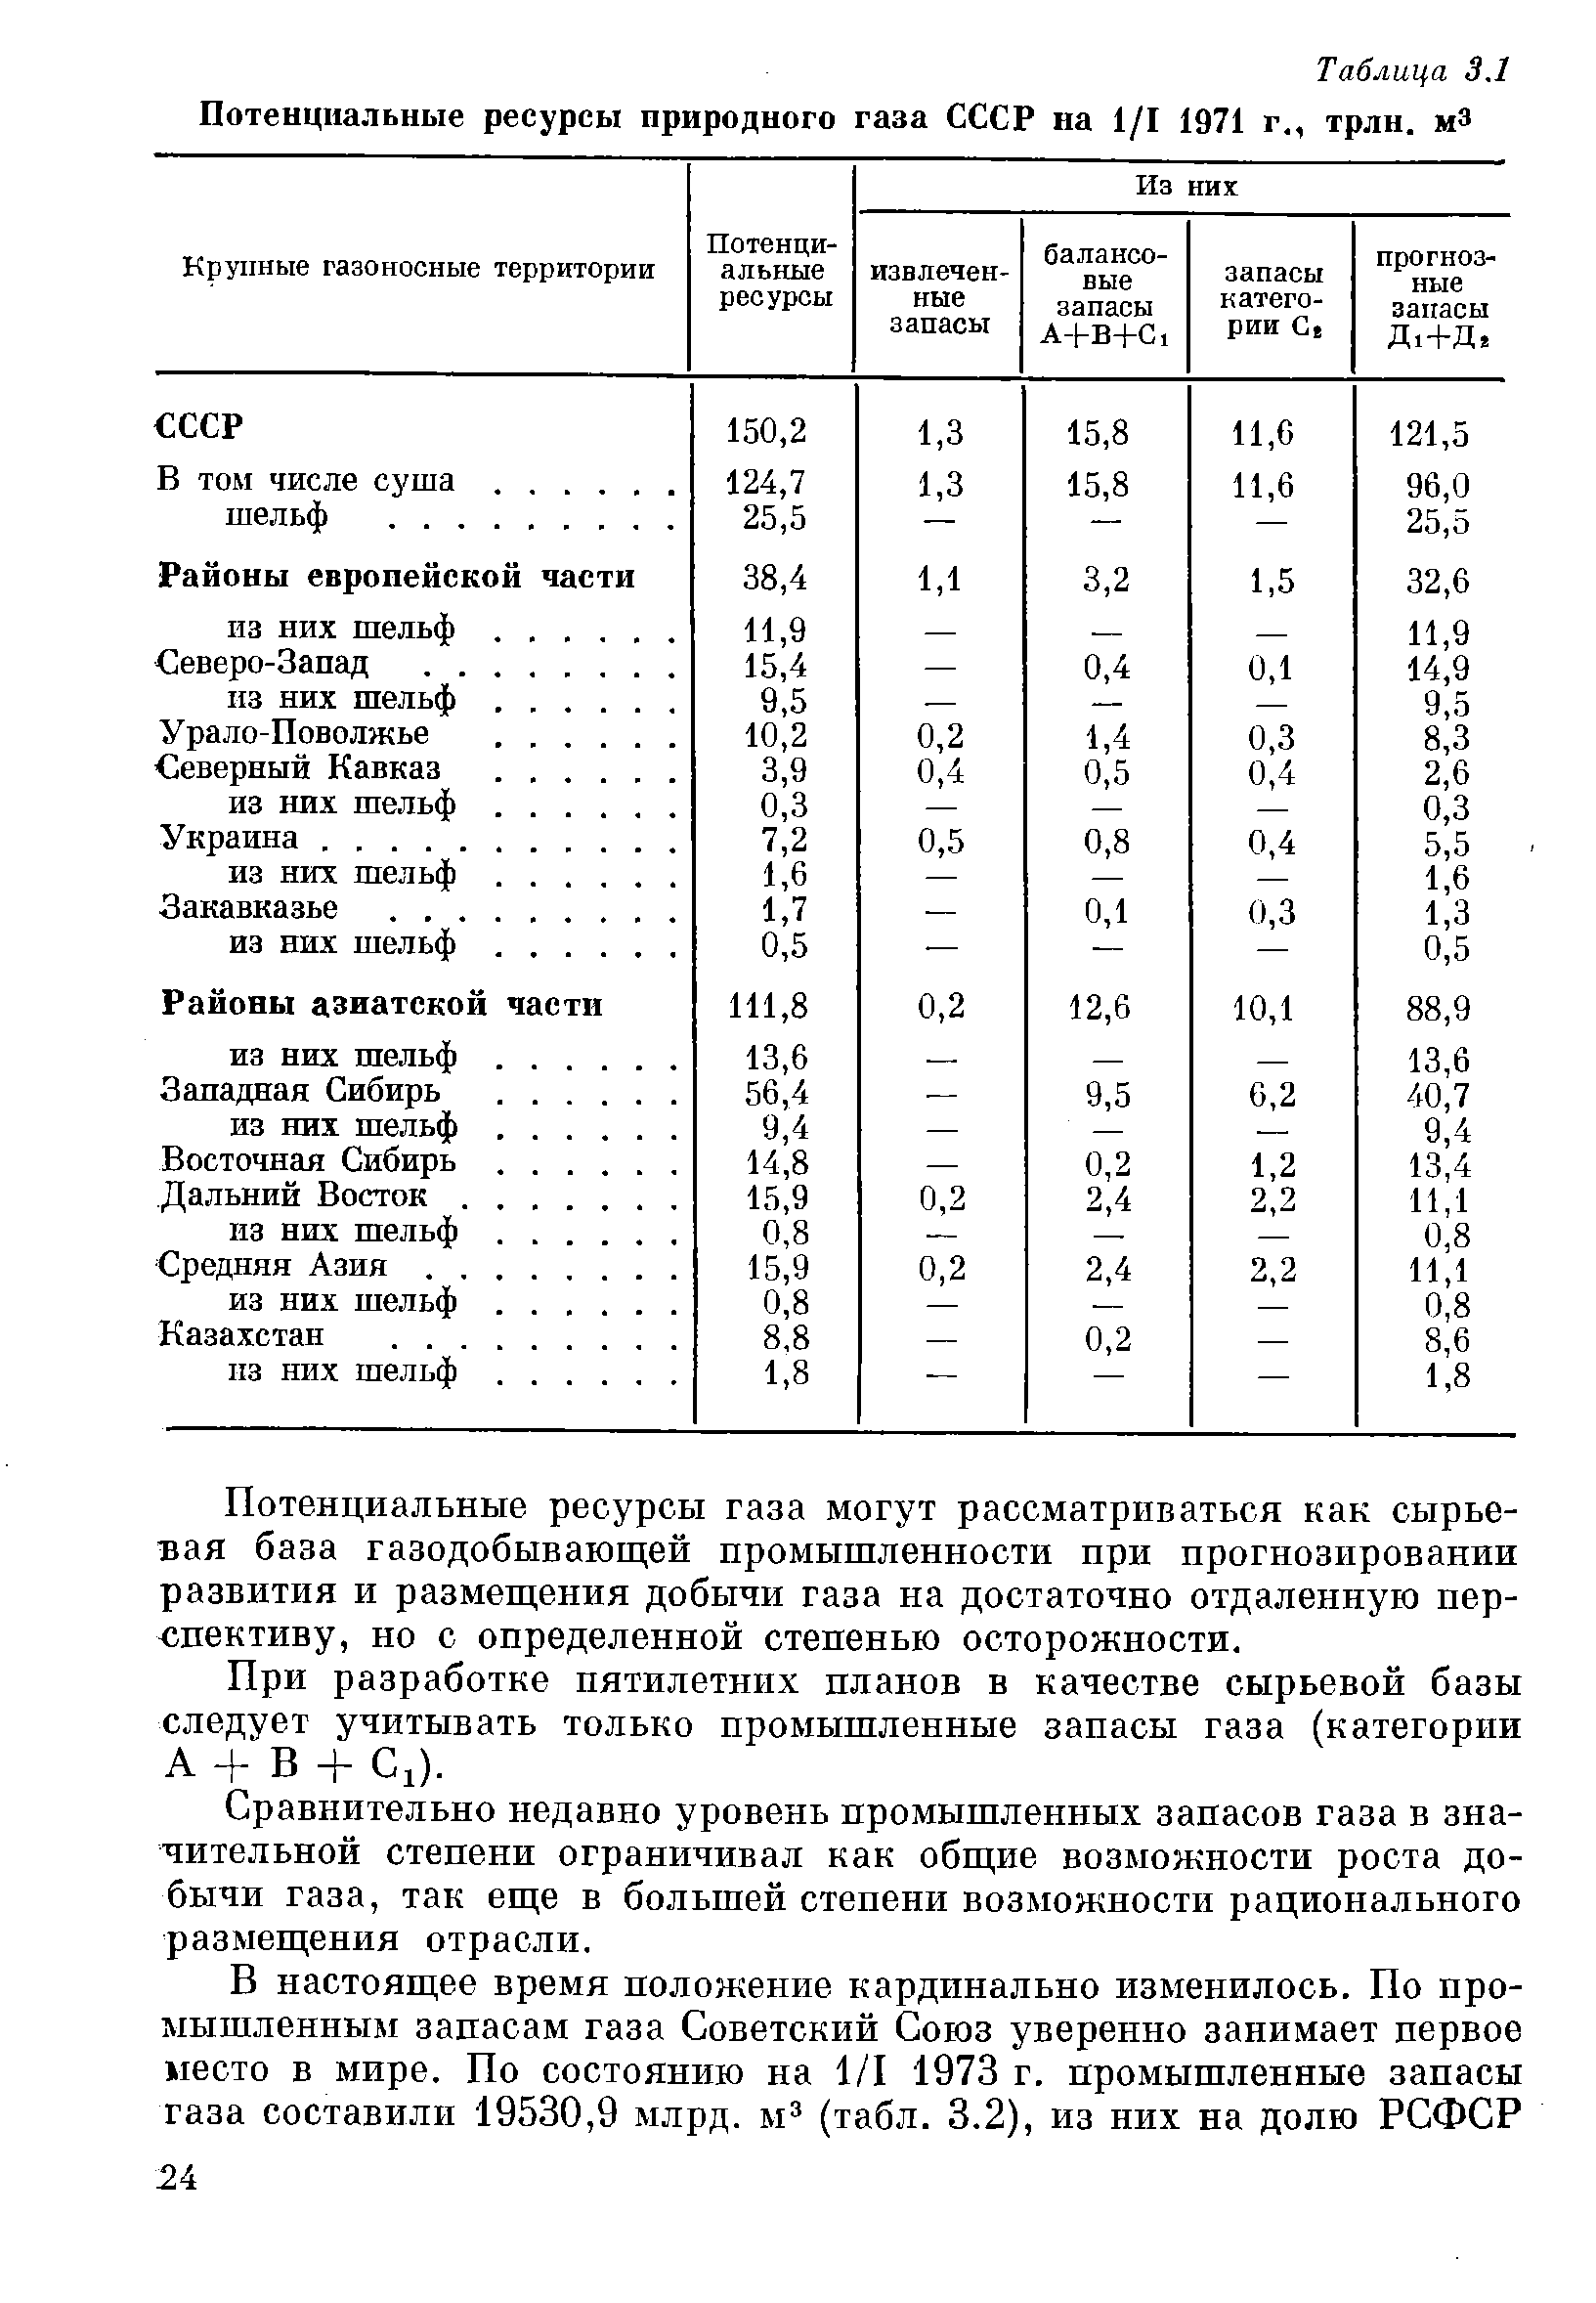 Таблица 3.1 Потенциальные ресурсы природного газа СССР на 1/1 1971 г., трлн. м3
